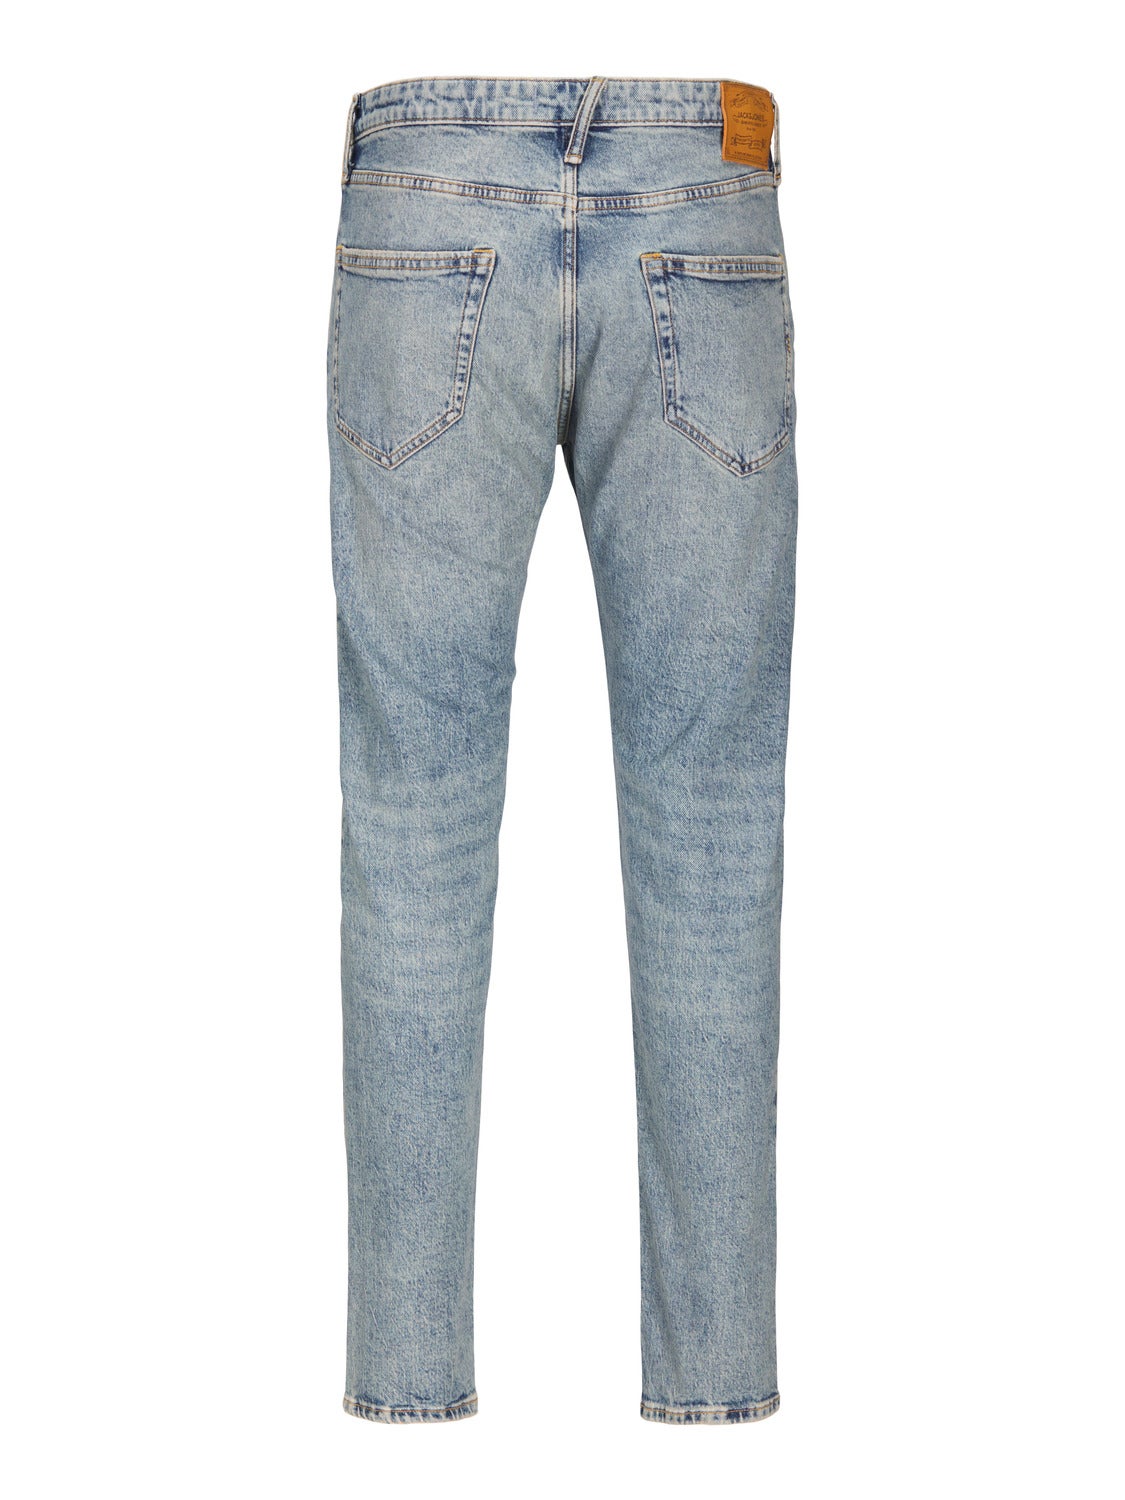 JJIERIK JJCOOPER SBD 519 Tapered fit jeans | Medium Blue | Jack 